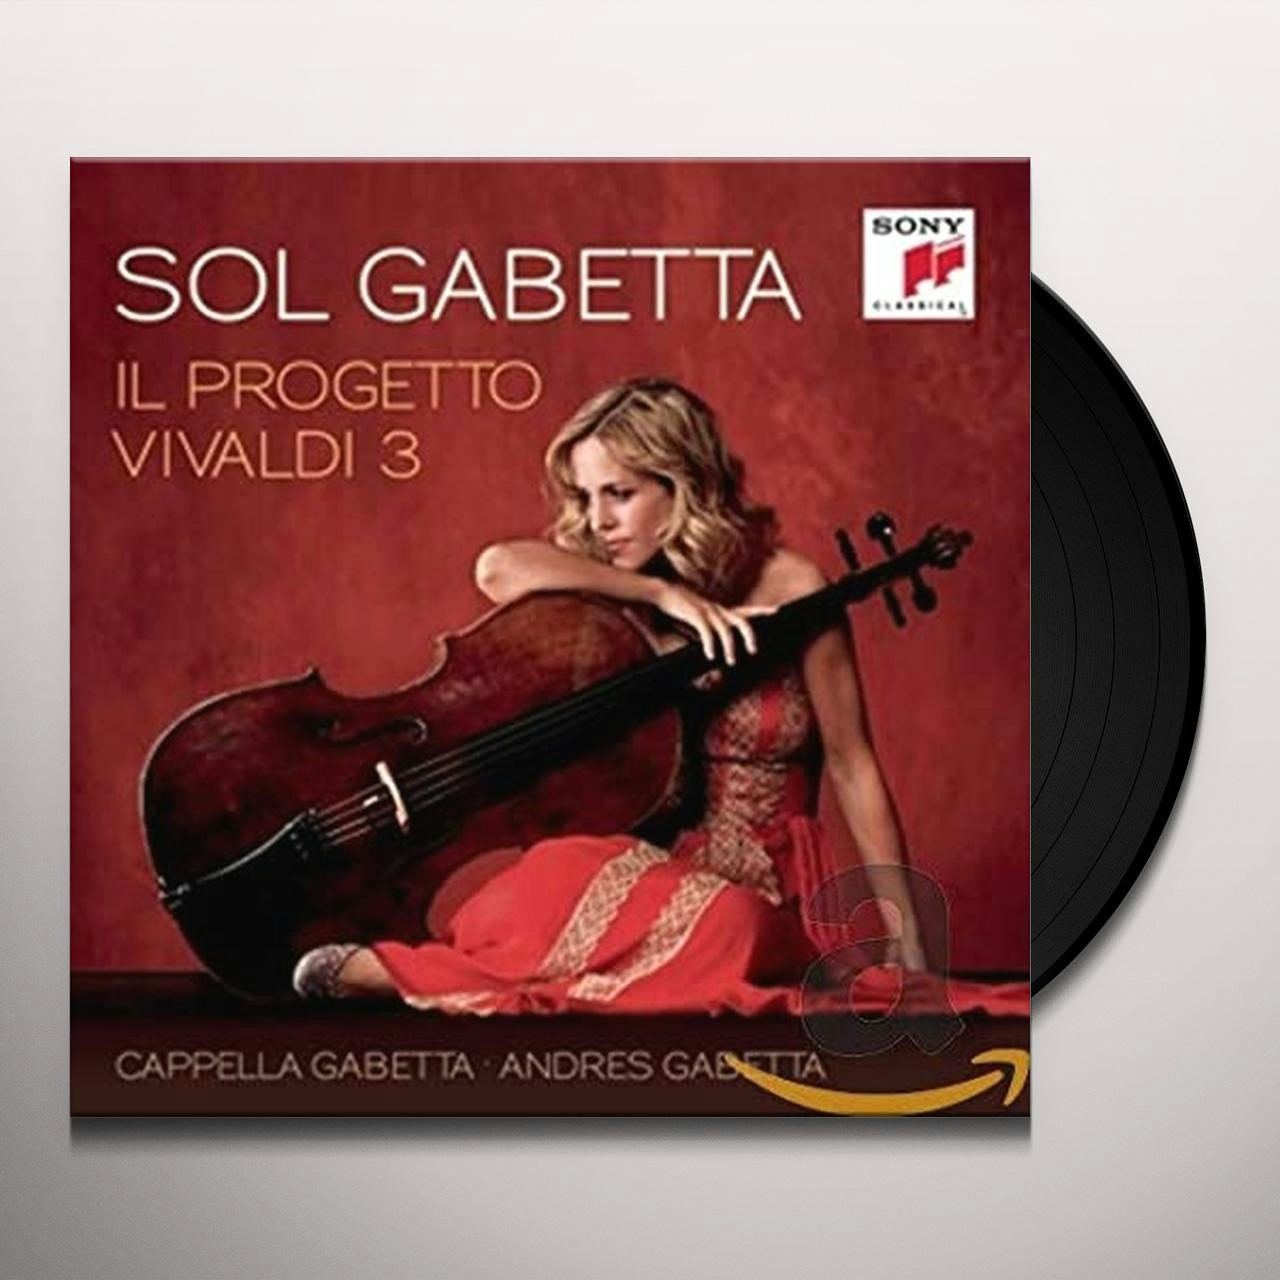 Sol Gabetta IL PROGETTO VIVALDI 3 (GER) (Vinyl)